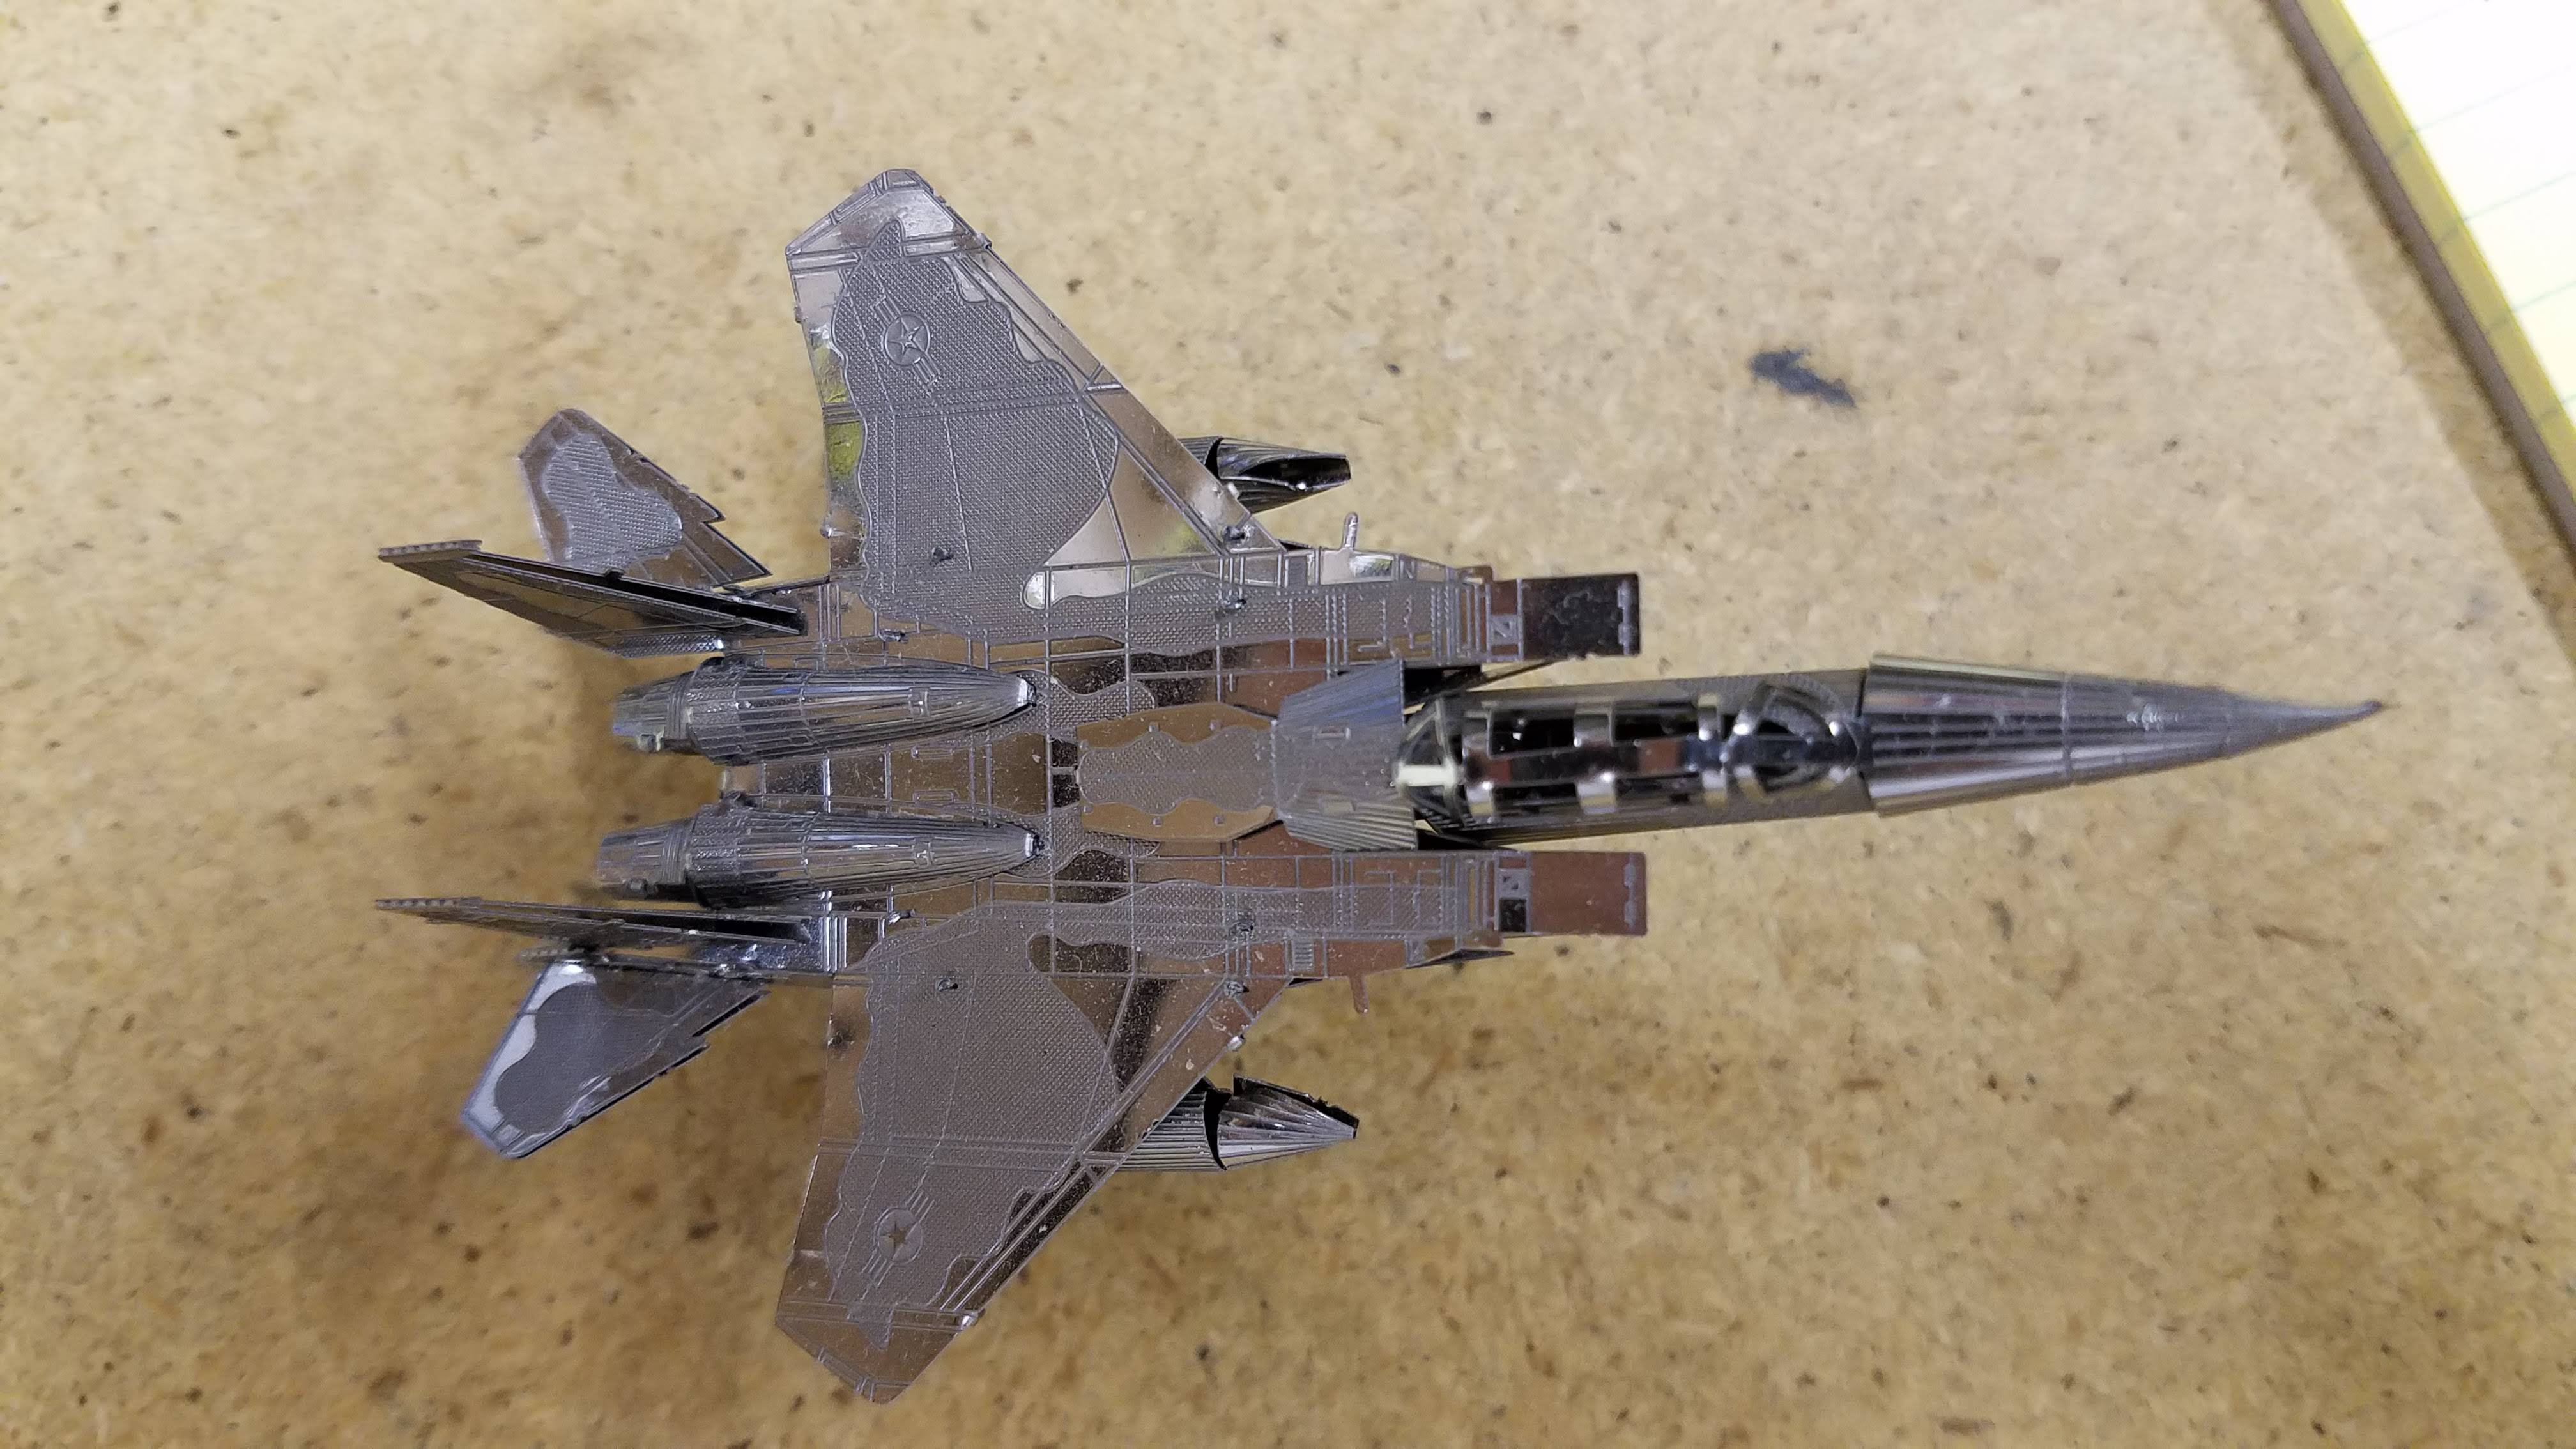 007 F-15 Eagle